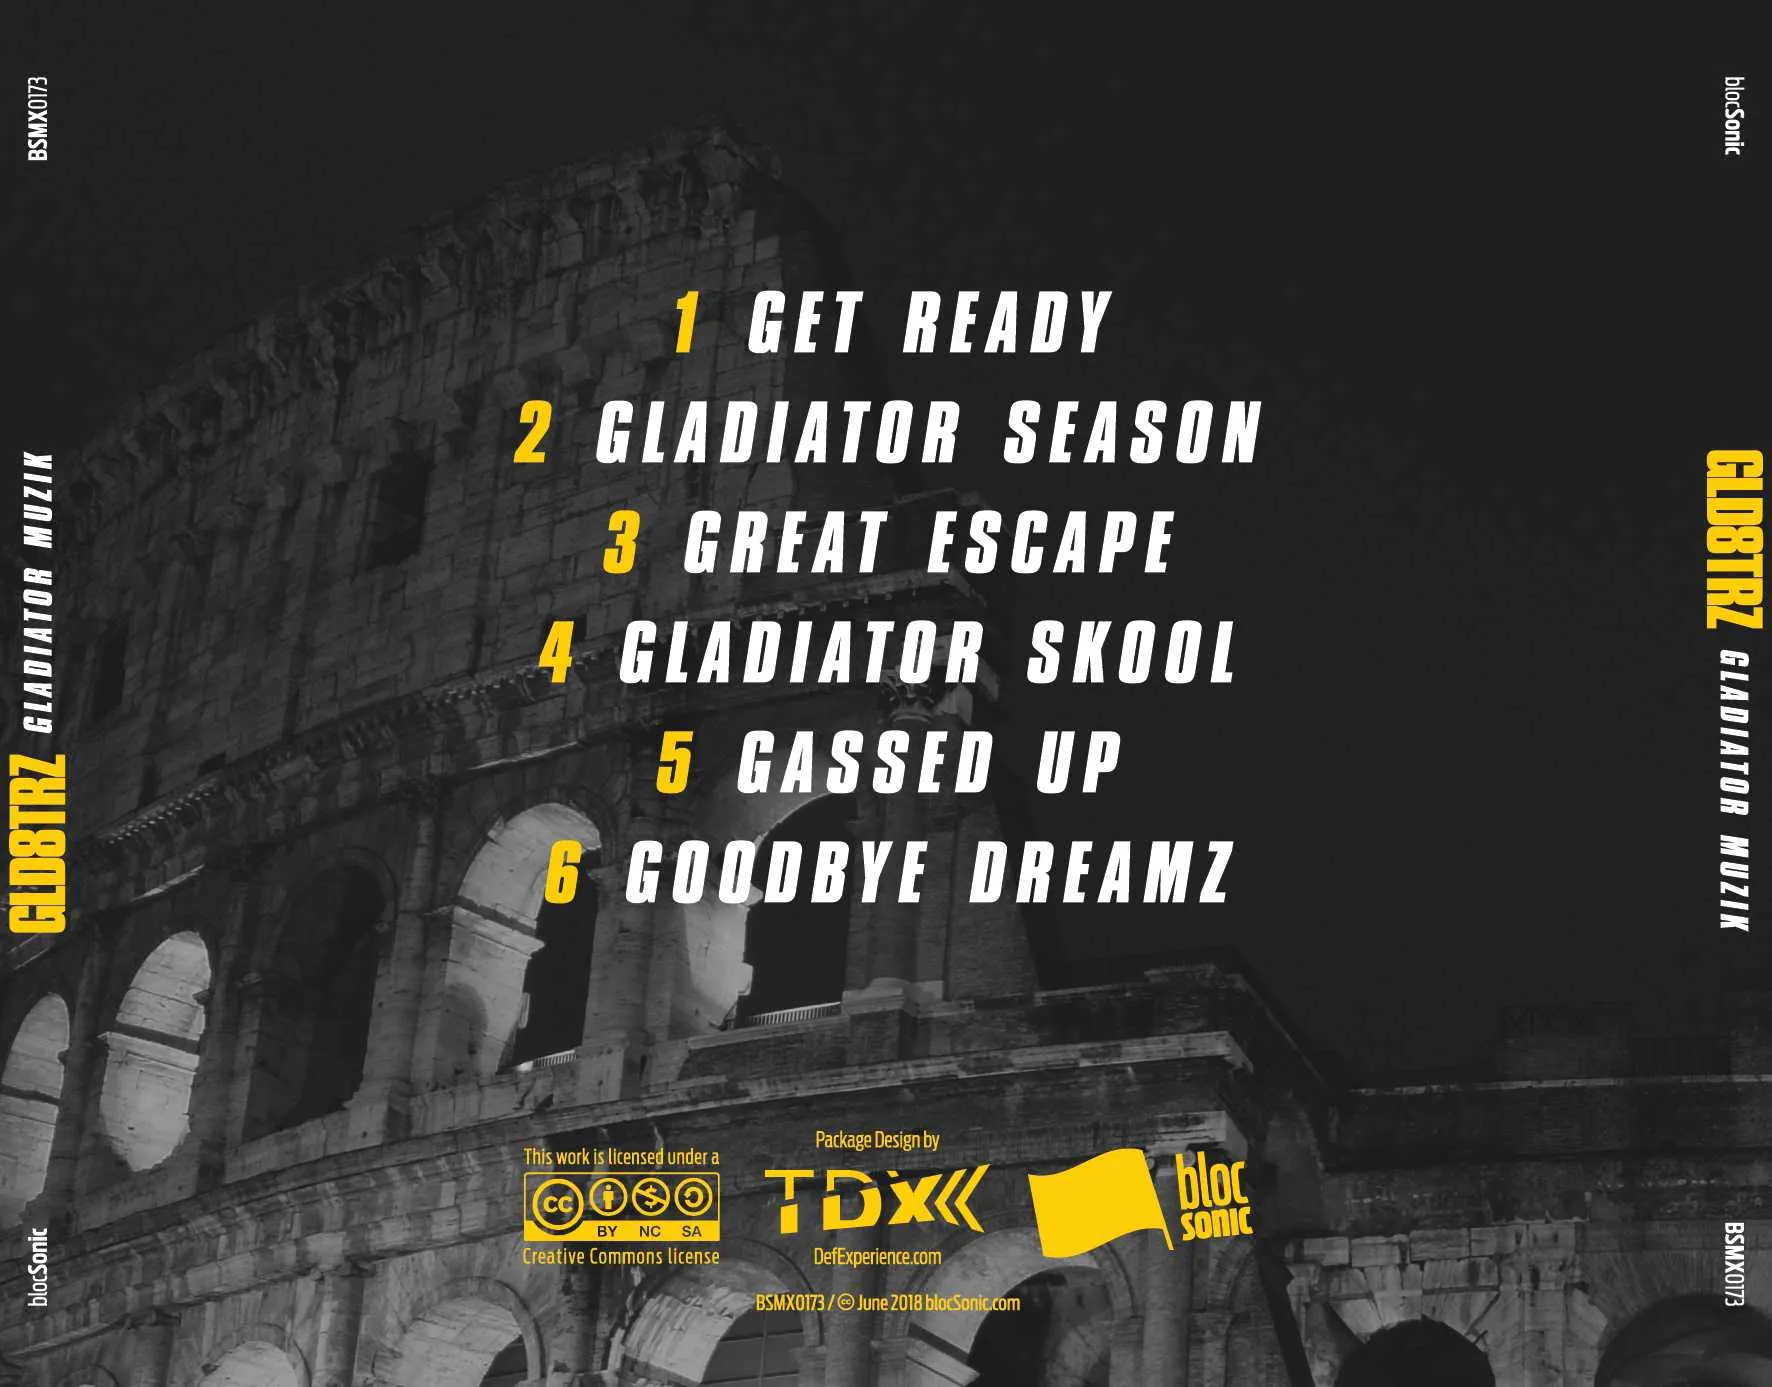 Album traycard for “Gladiator Muzik” by GLD8TRZ